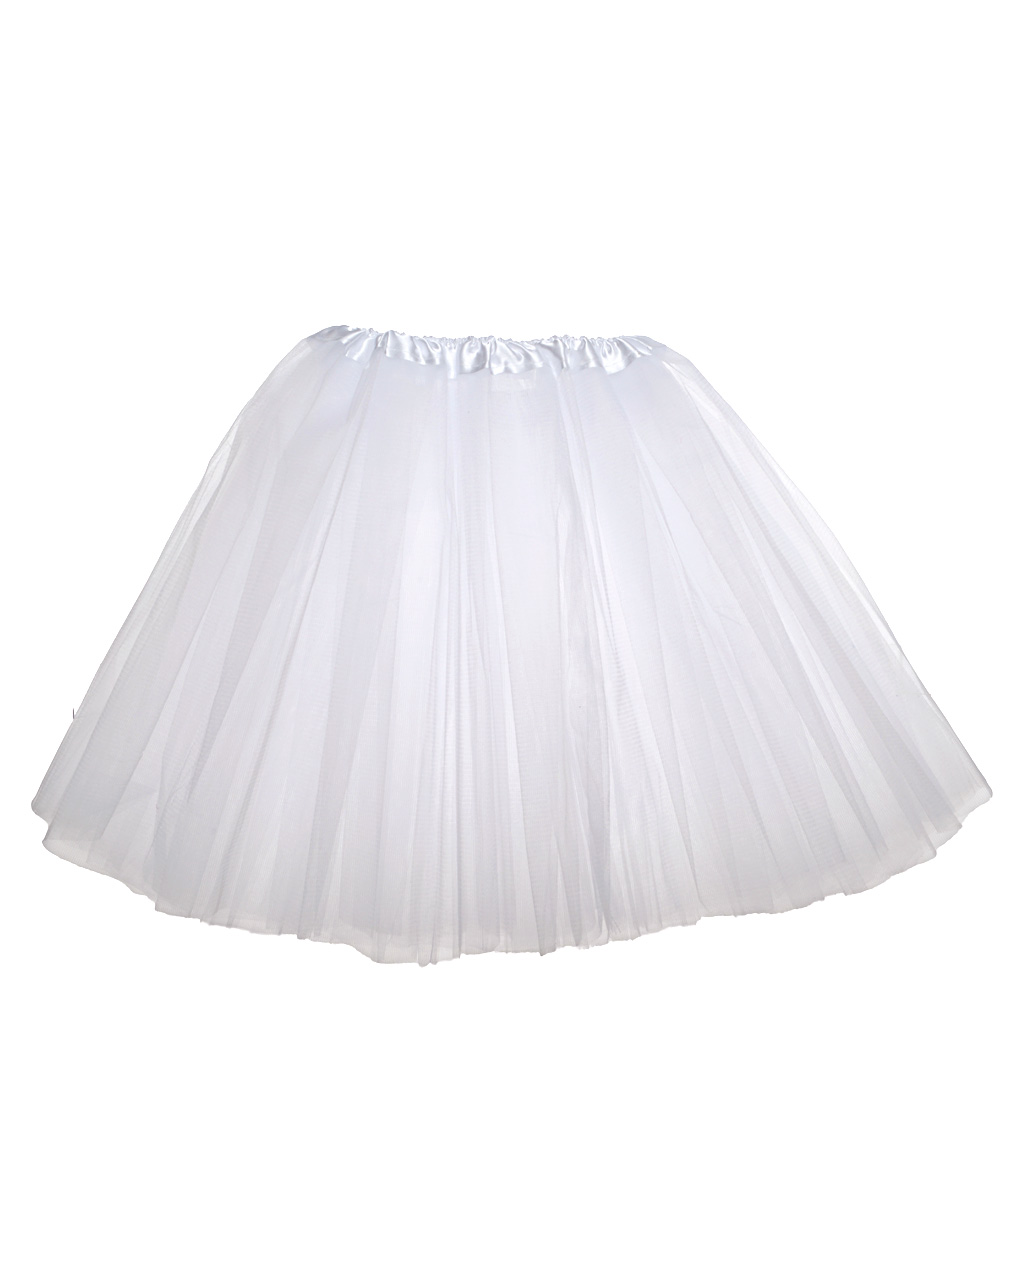 white tulle skirt kids